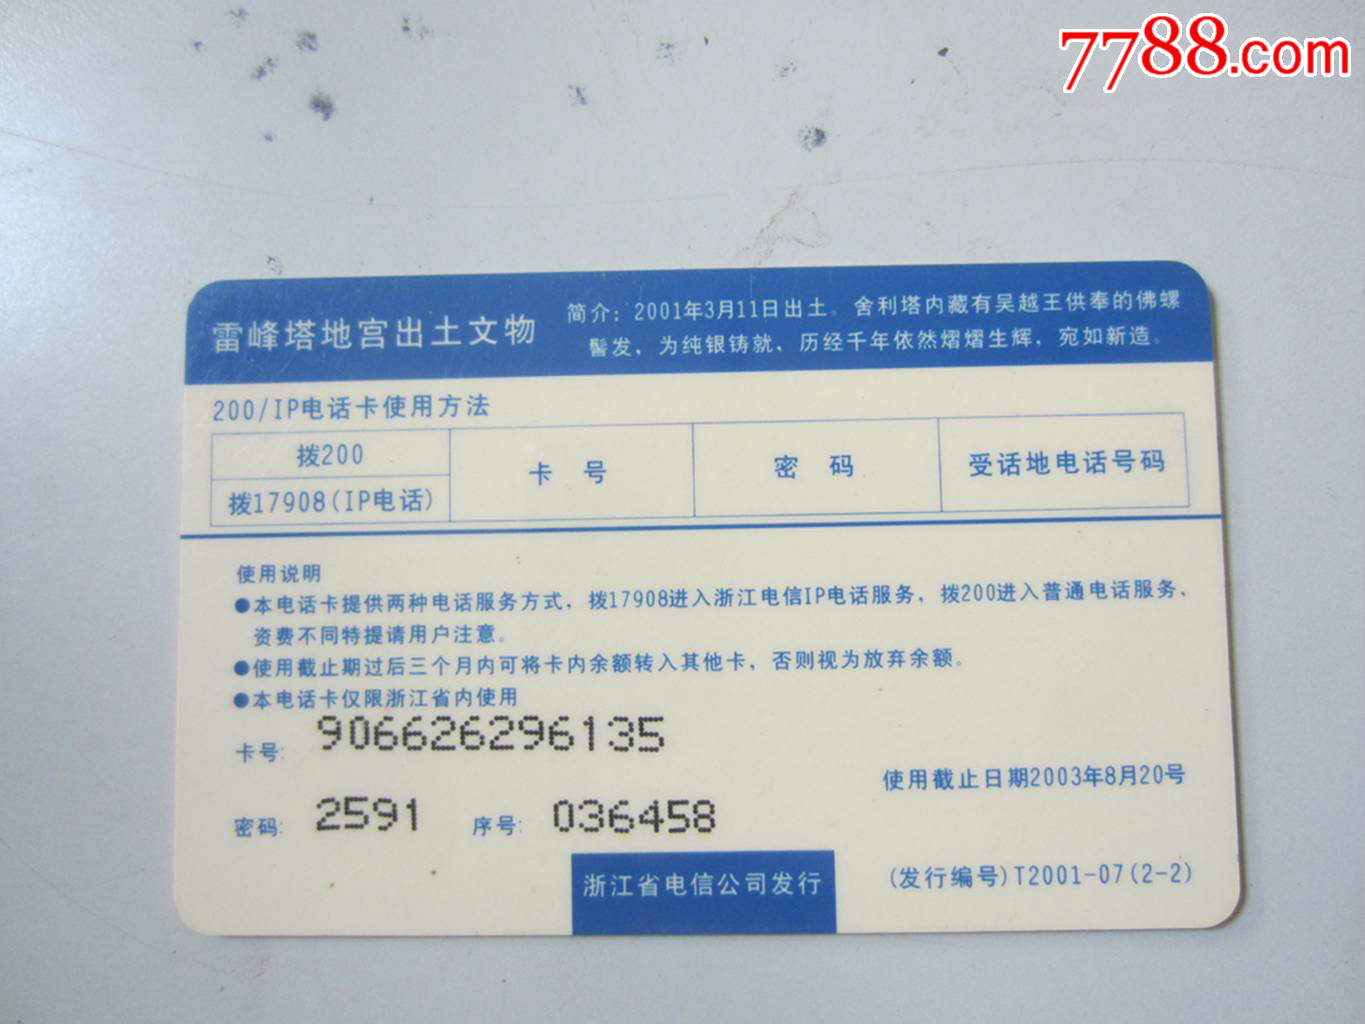 中国电信(200IP电话卡)